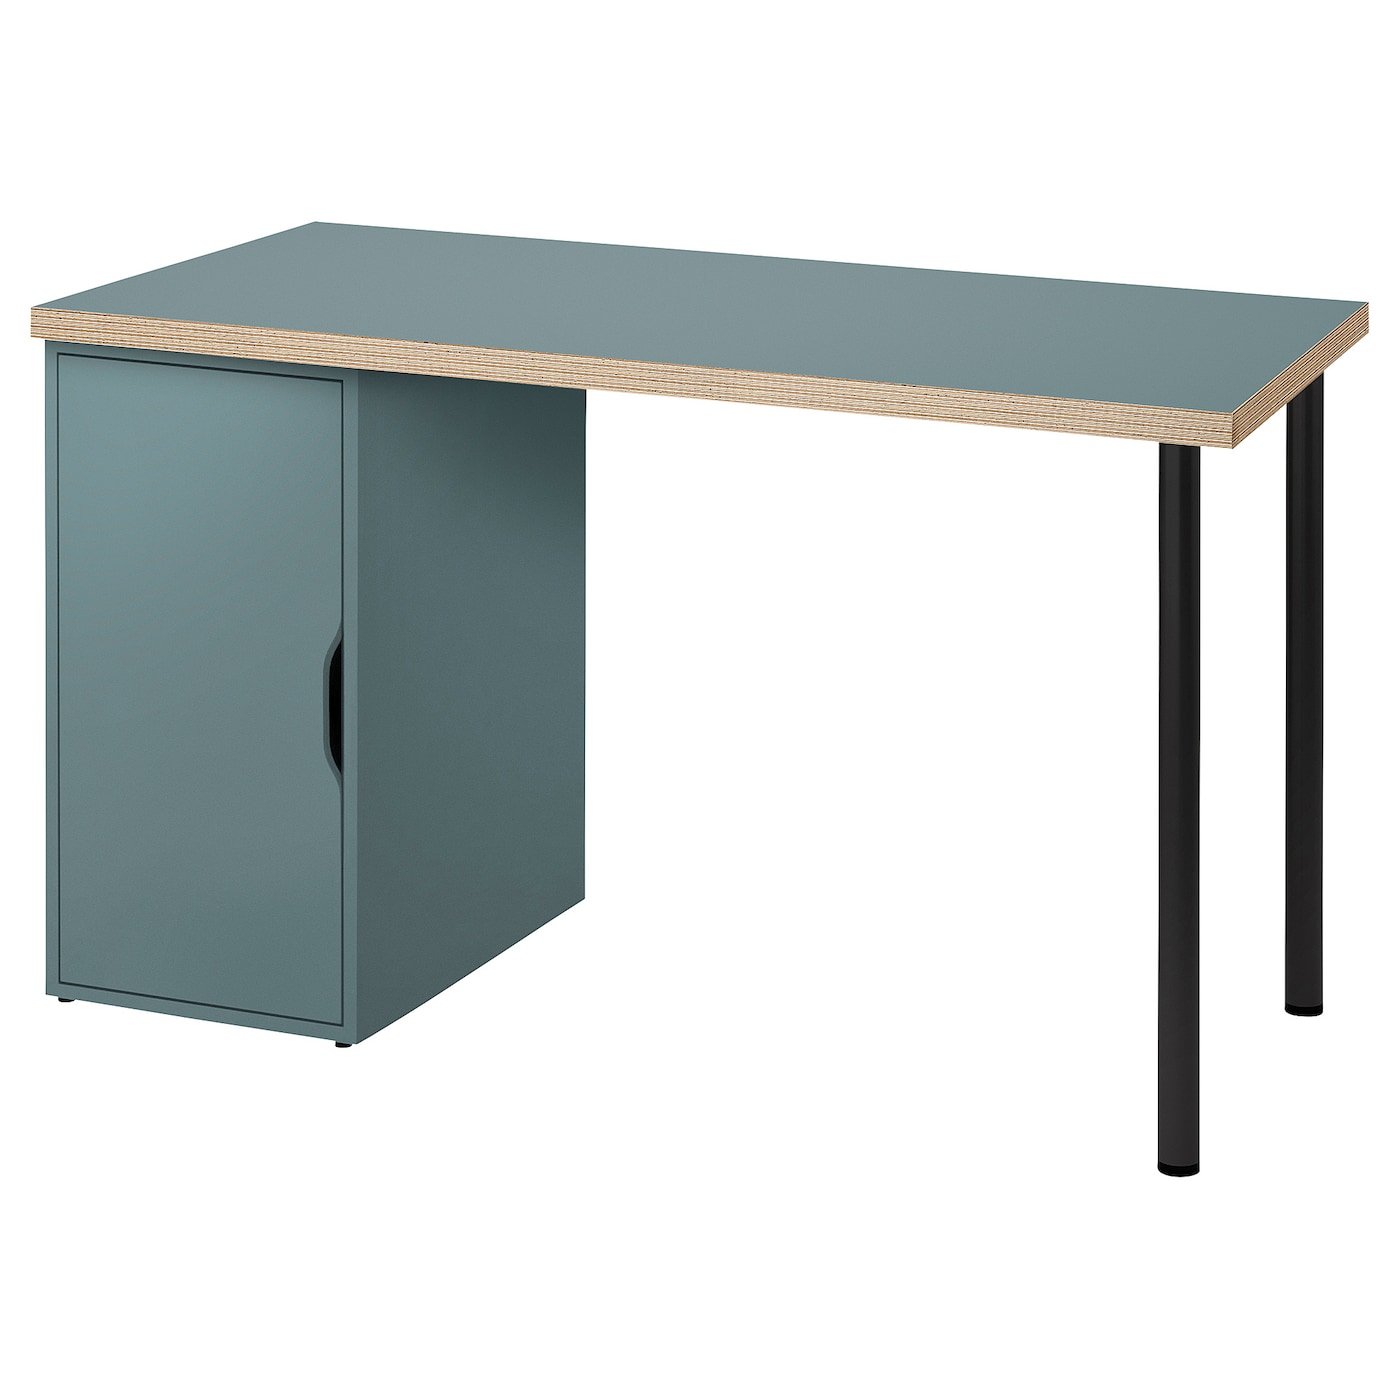 Письменный стол с ящиком - IKEA LAGKAPTEN/ALEX, 120х60 см, серый/черный, ЛАГКАПТЕН/АЛЕКС ИКЕА